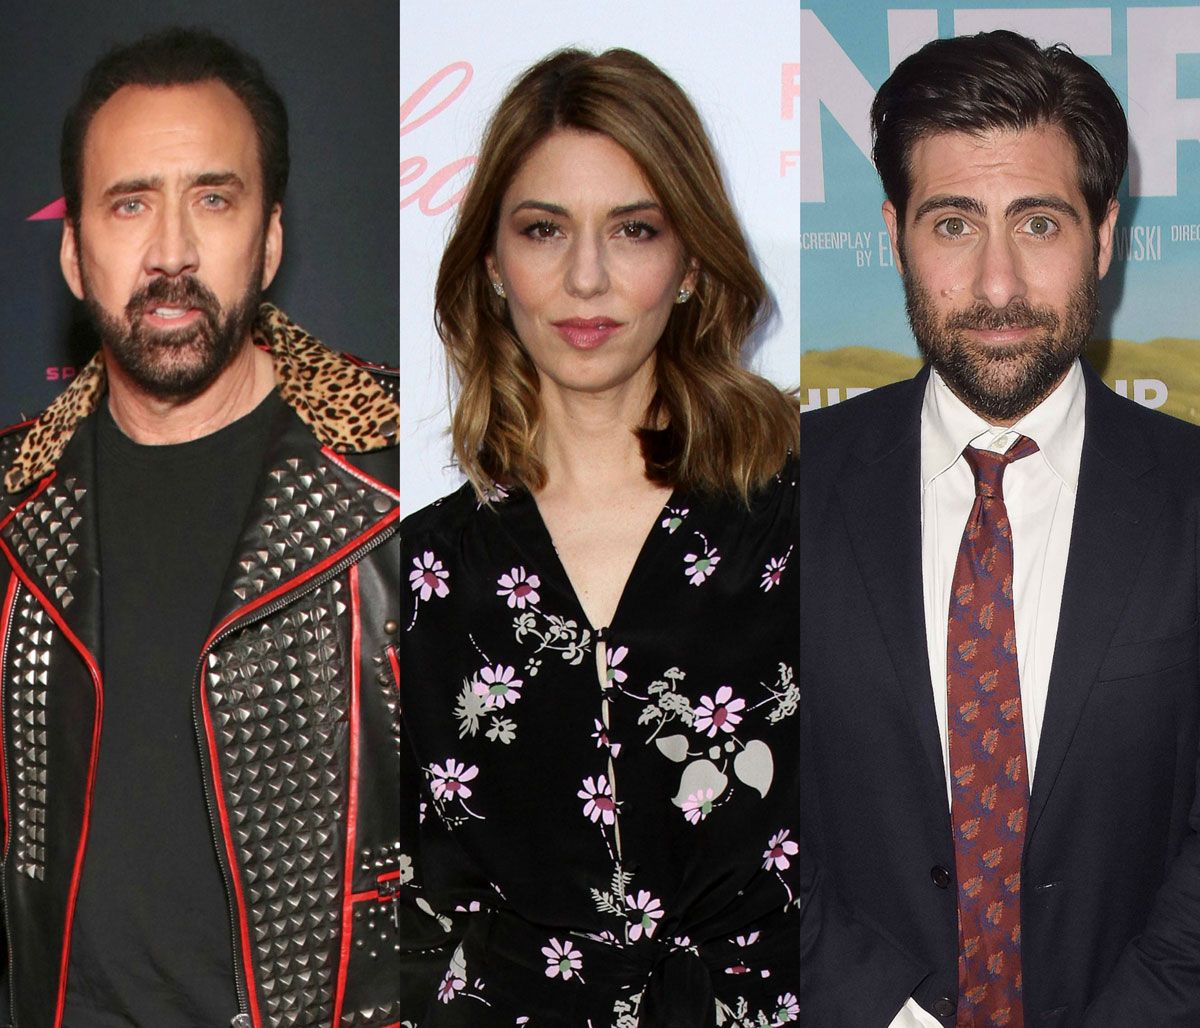 Nicolas Cage, Sofia Coppola, and Jason Schwartzman are related